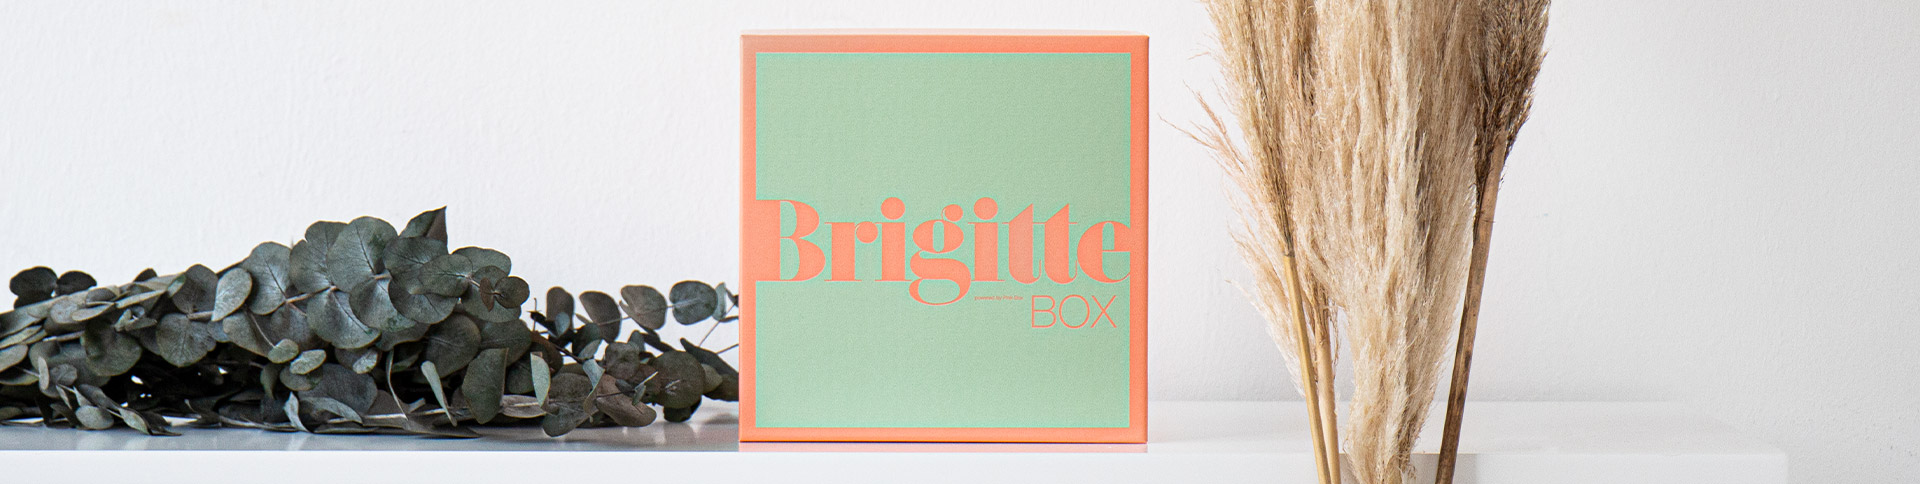 BRIGITTE Box Nr. 2/2020